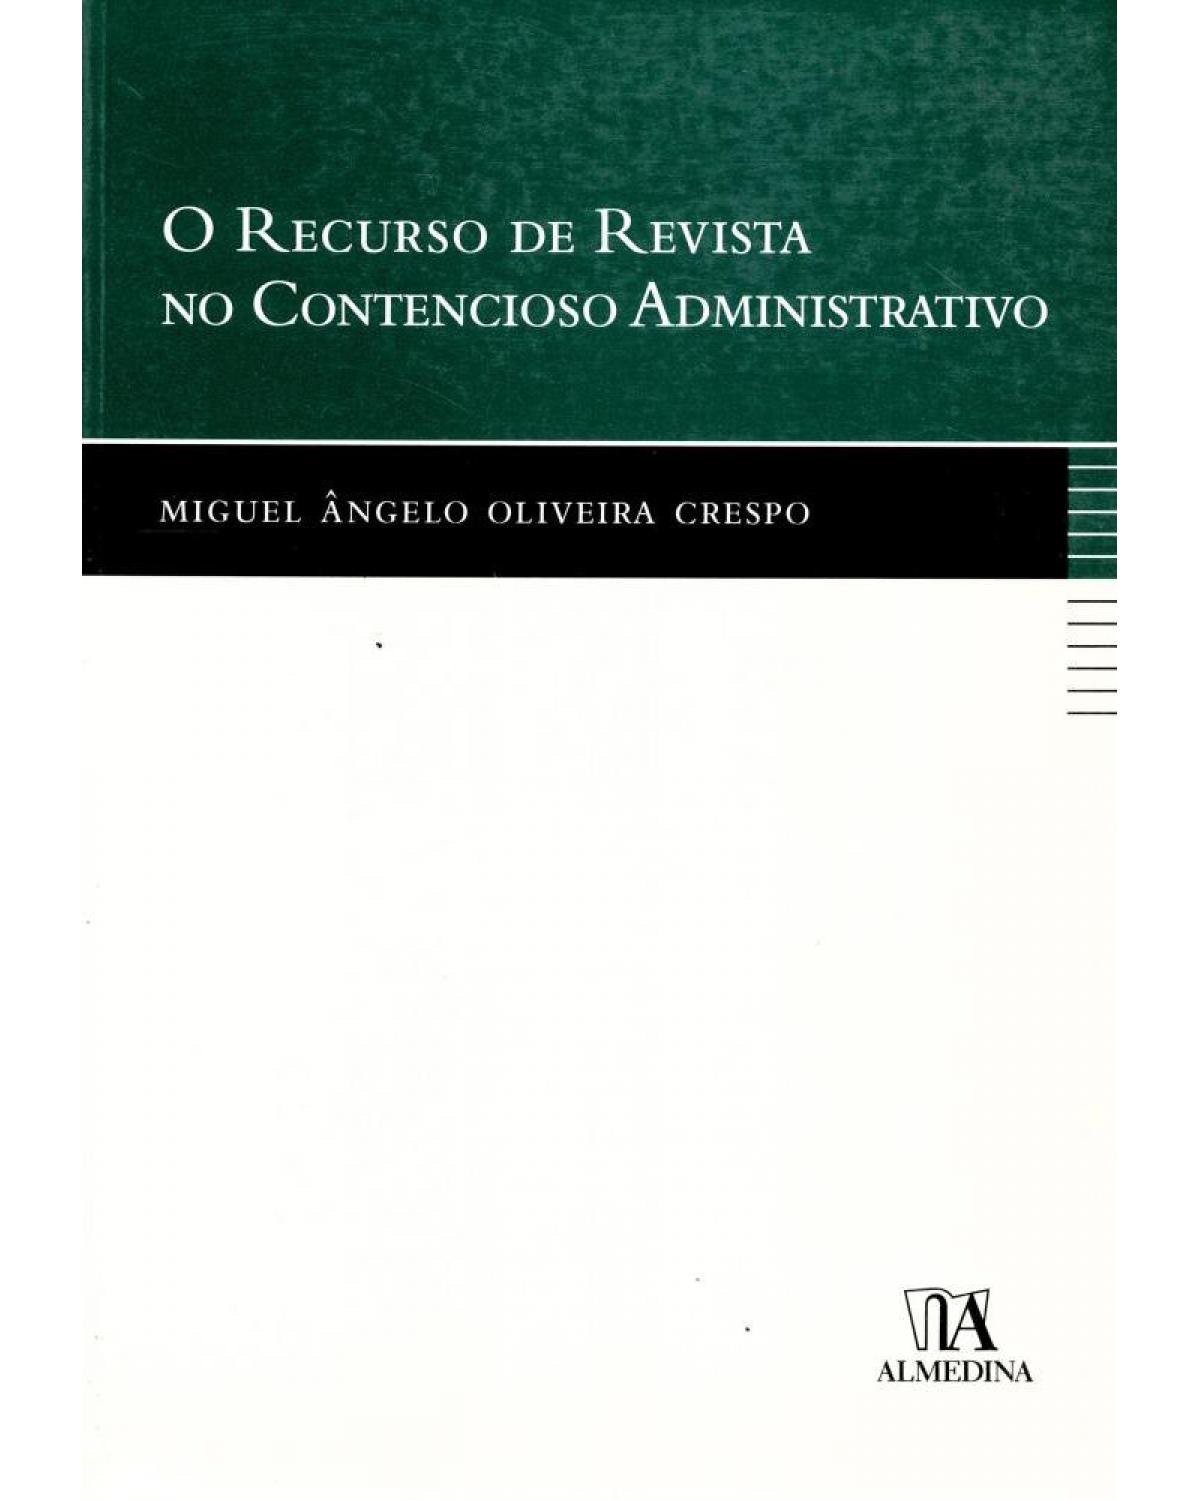 O recurso de revista no contencioso administrativo - 1ª Edição | 2007